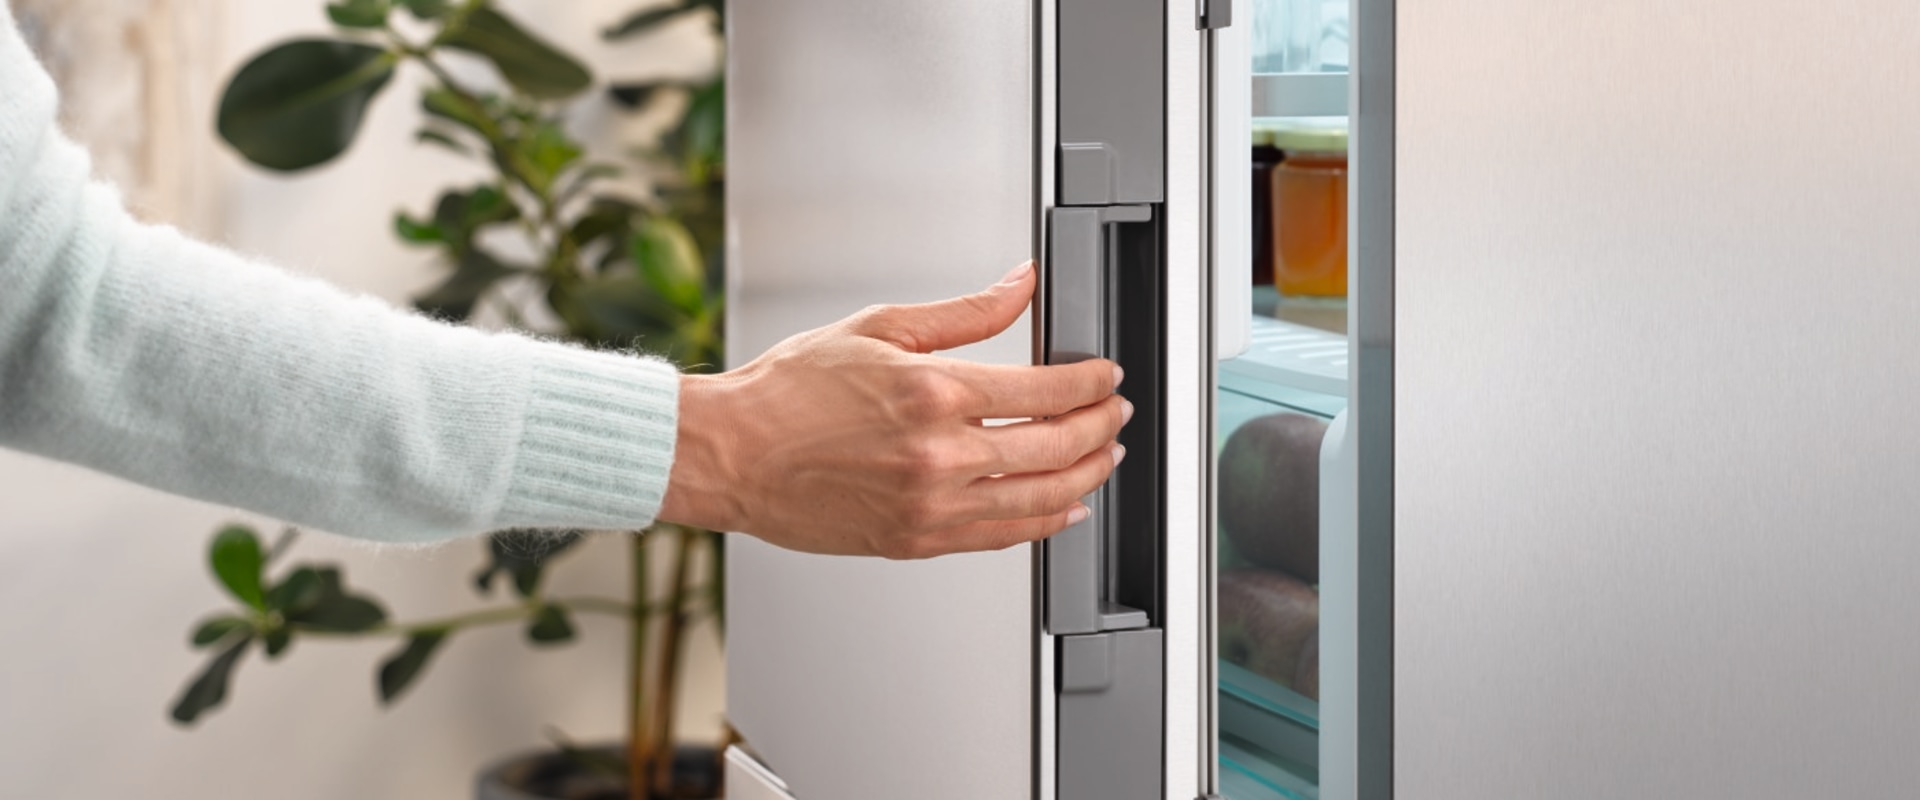 Waarom blijft de koelkast draaien?